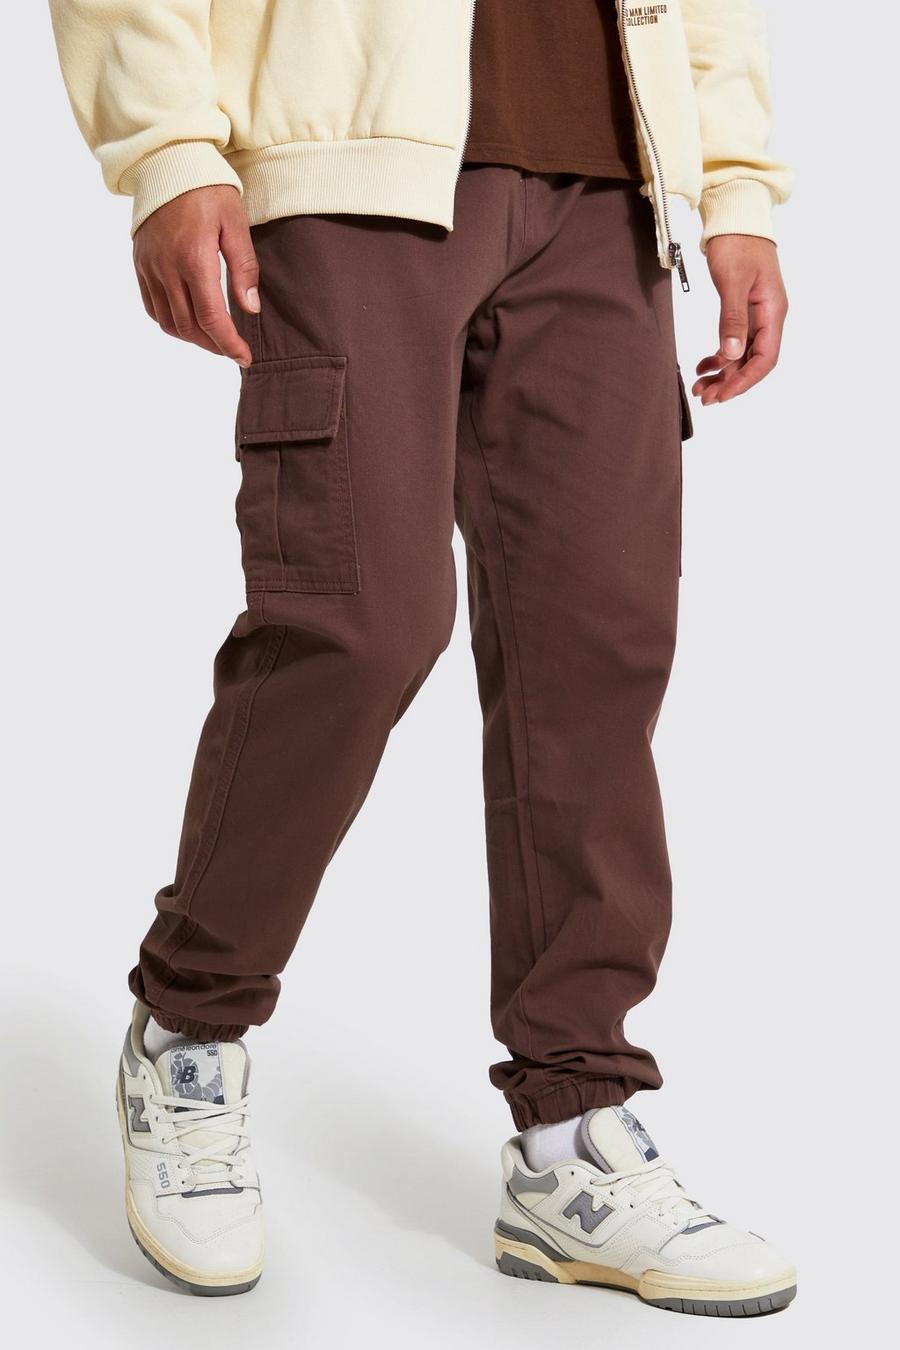 https://media.boohoo.com/i/boohoo/bmm04218_chocolate_xl/male-chocolate-tall-slim-fit-cargo-trousers/?w=900&qlt=default&fmt.jp2.qlt=70&fmt=auto&sm=fit